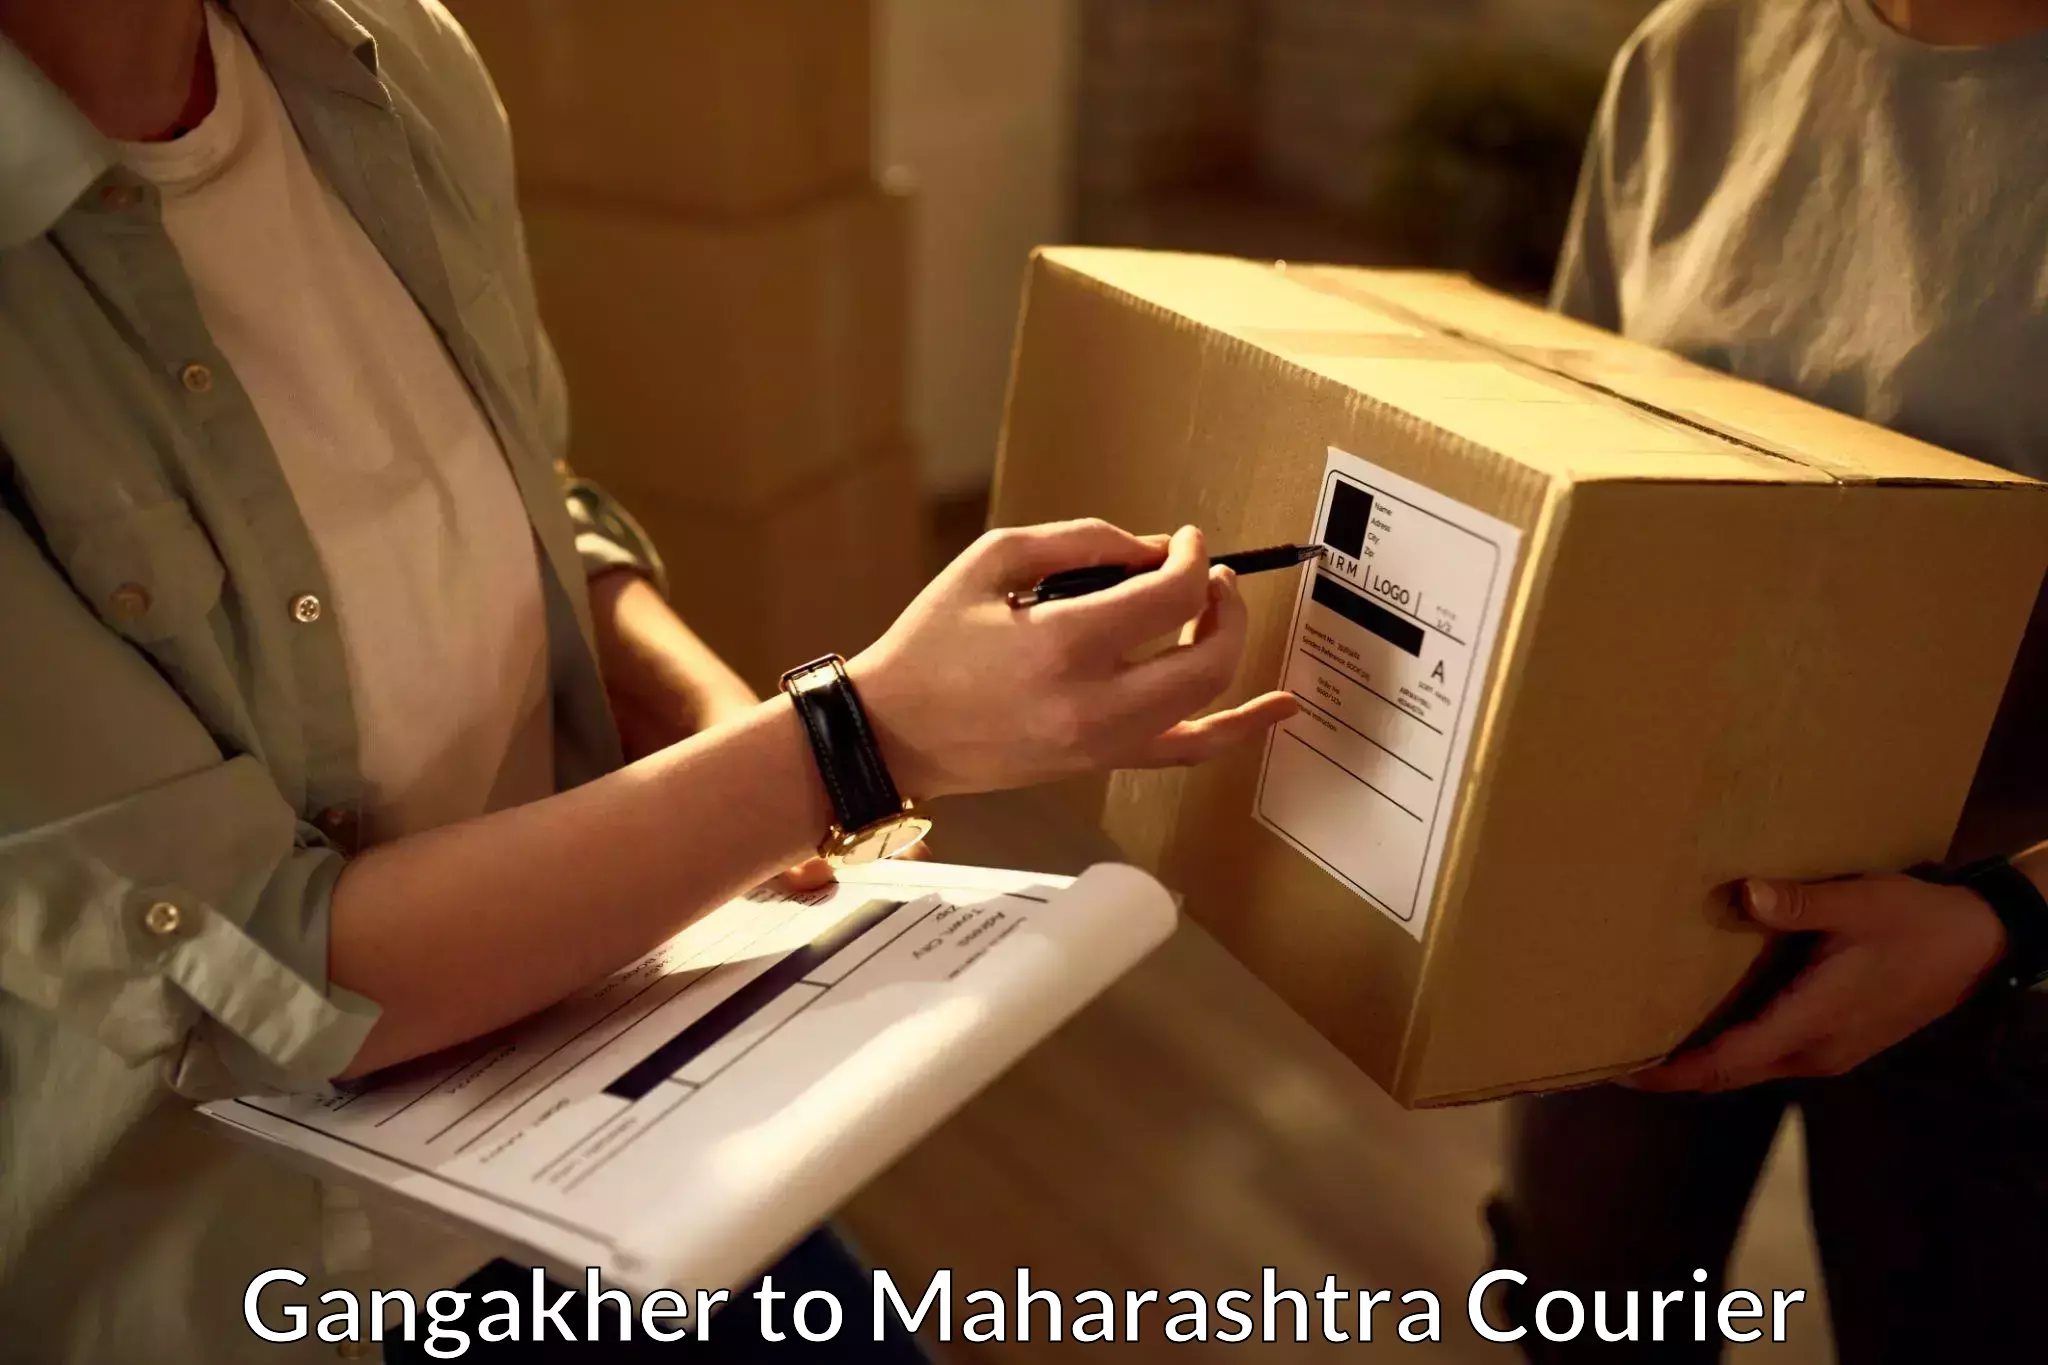 Urgent courier needs Gangakher to Maharashtra